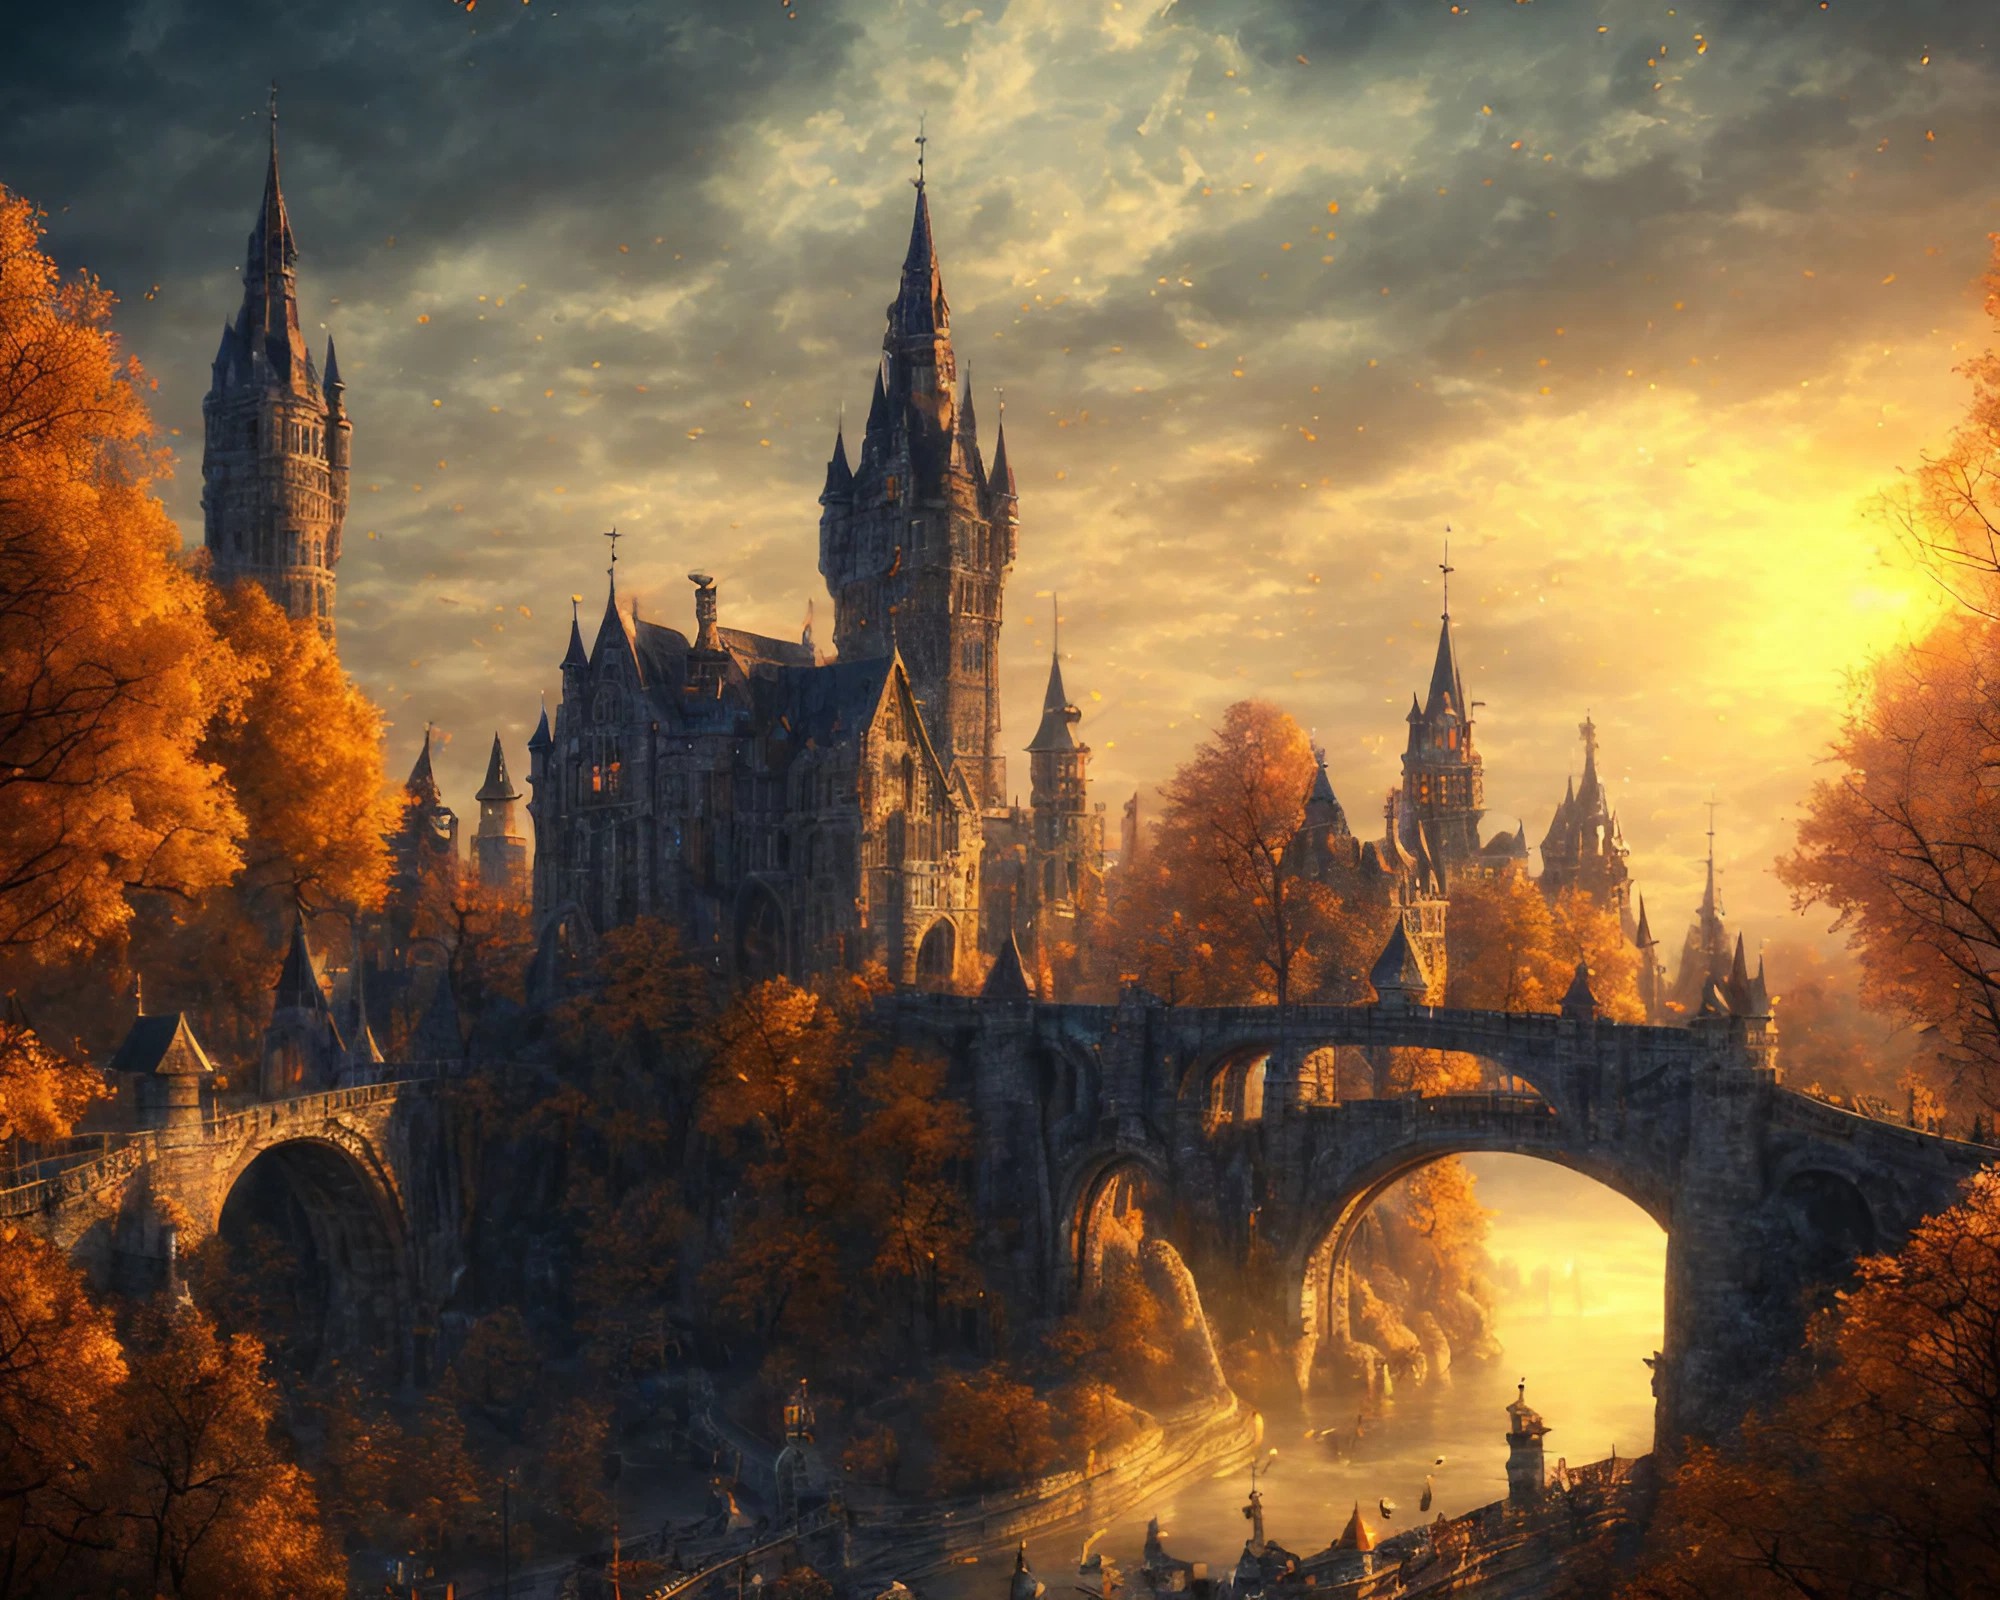 中世のRPG風な西洋のお城と夕日と美しい橋のリアルイラスト風景無料画像素材